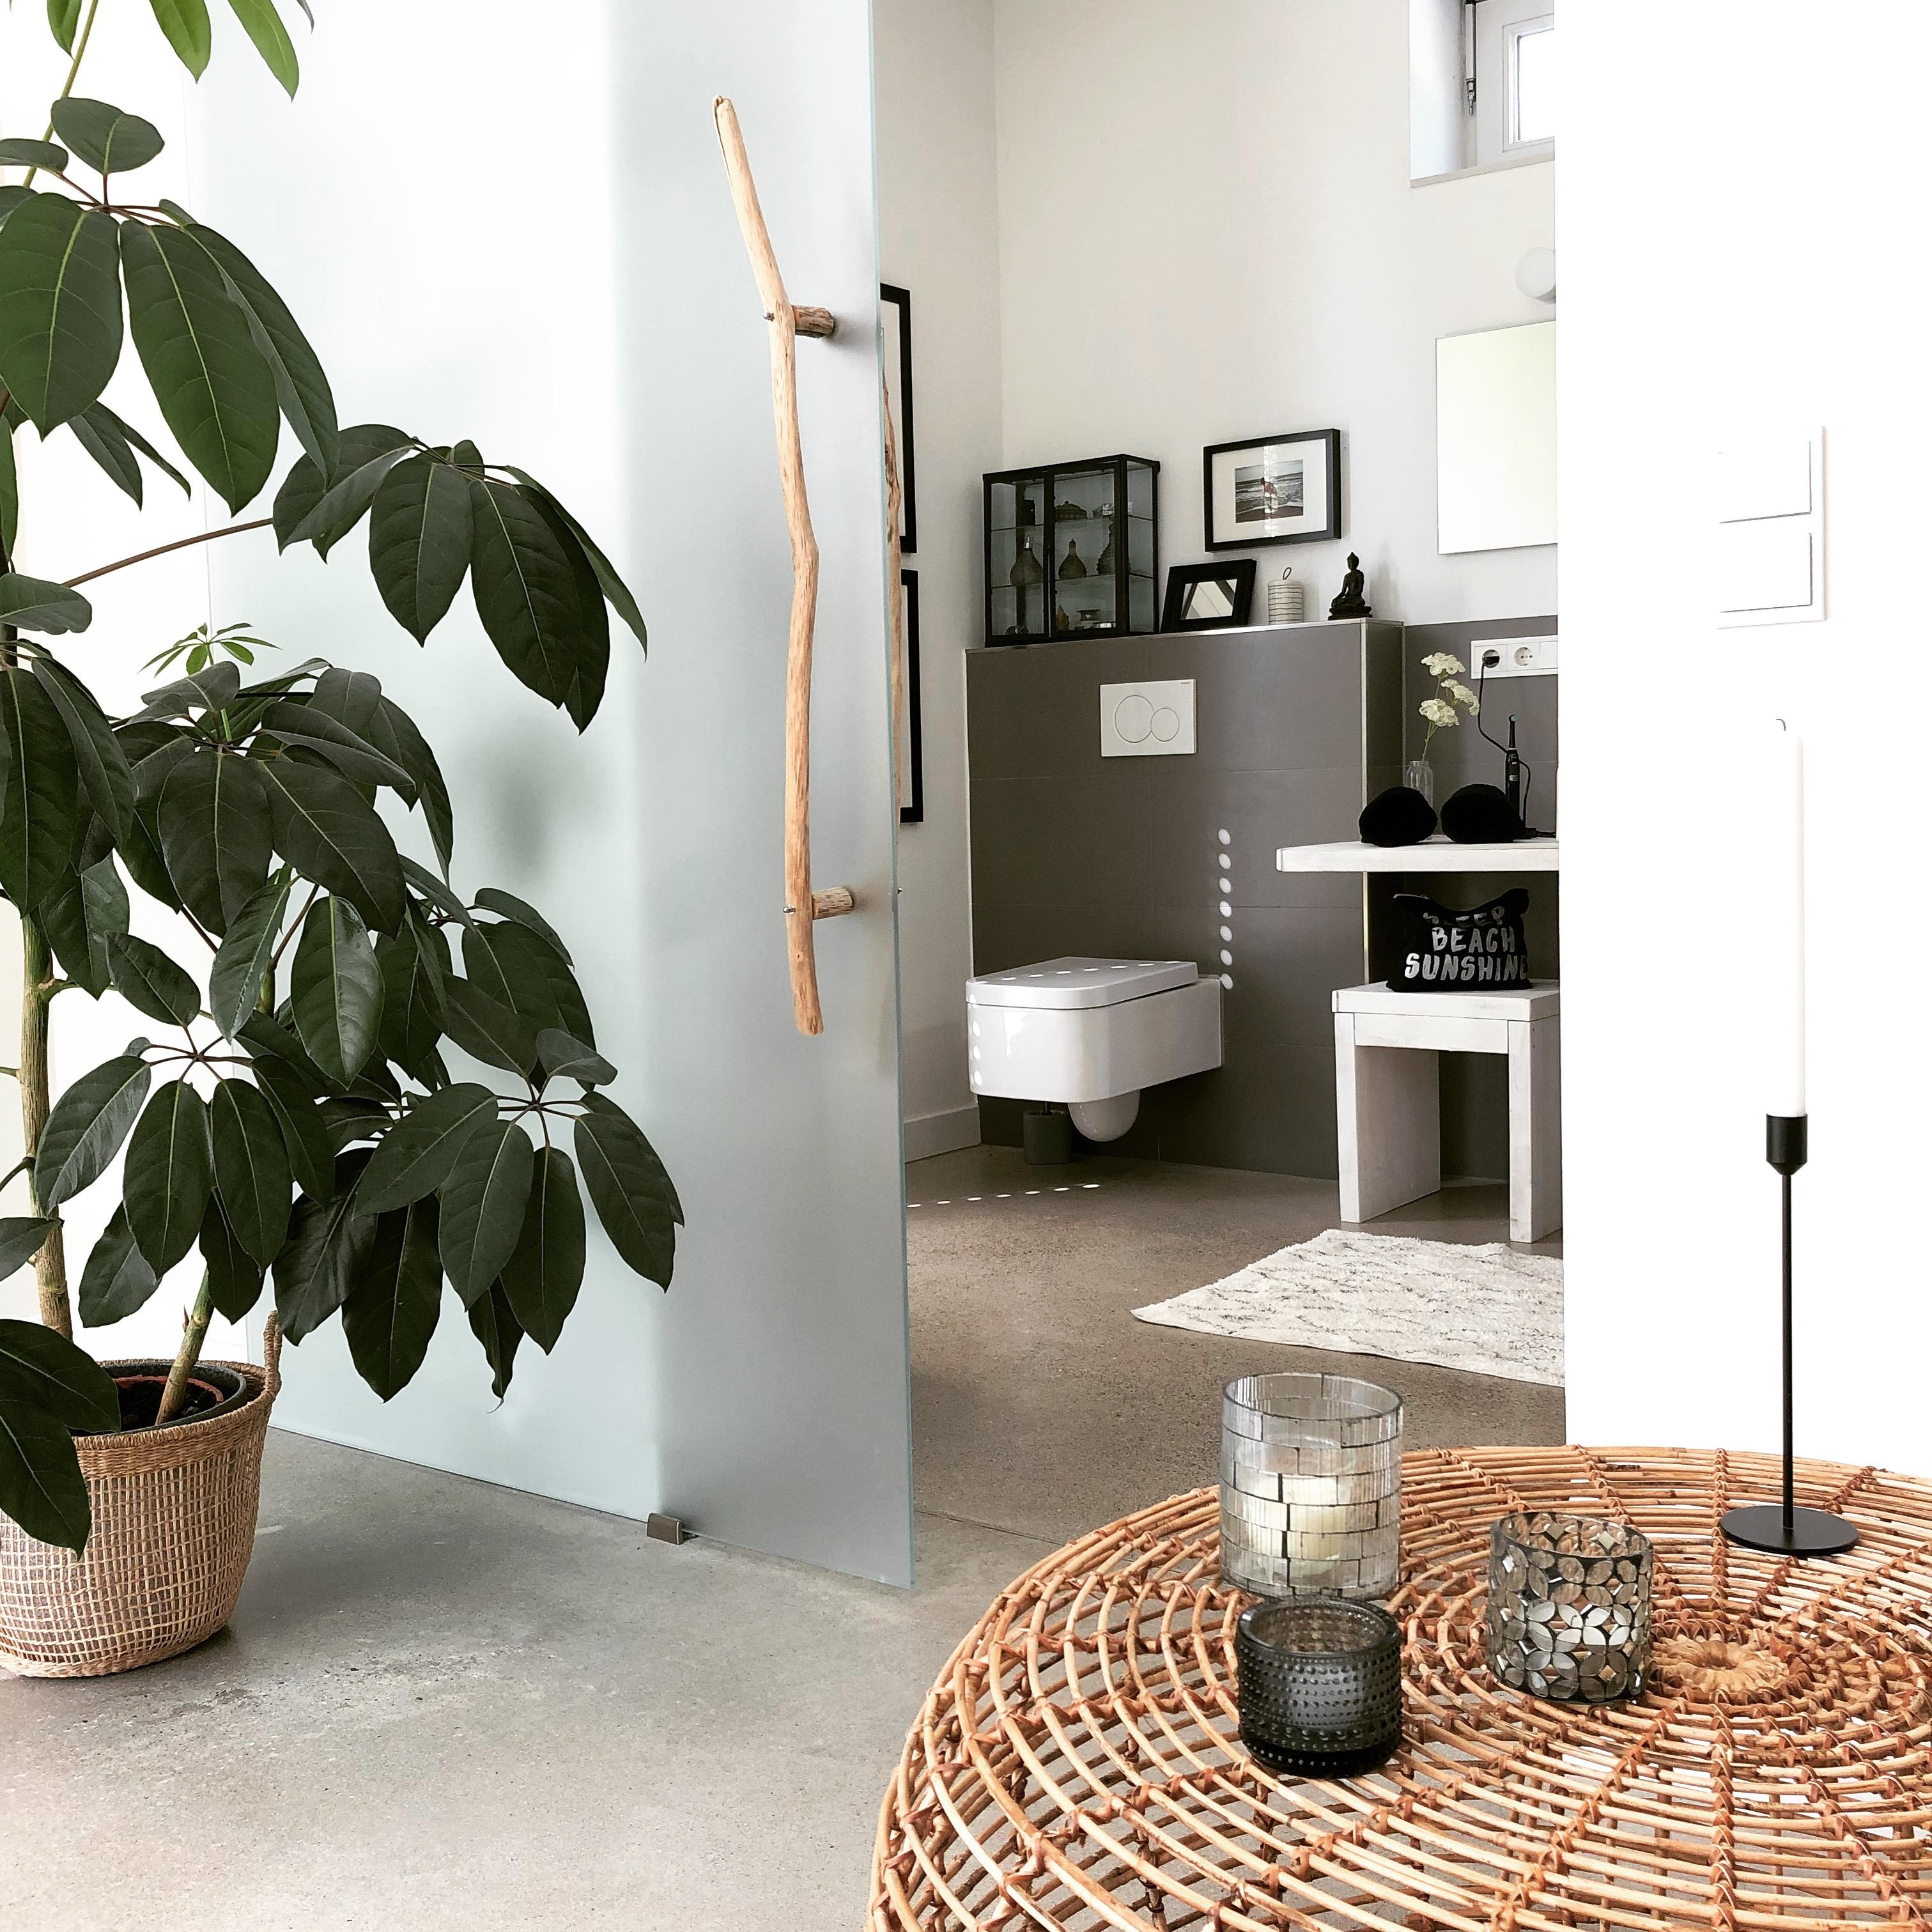 #betonboden  #Badezimmer #grey 

Diese Kombination mag ich 🖤 Beton und Bambustisch mit Blick ins Bad ! 